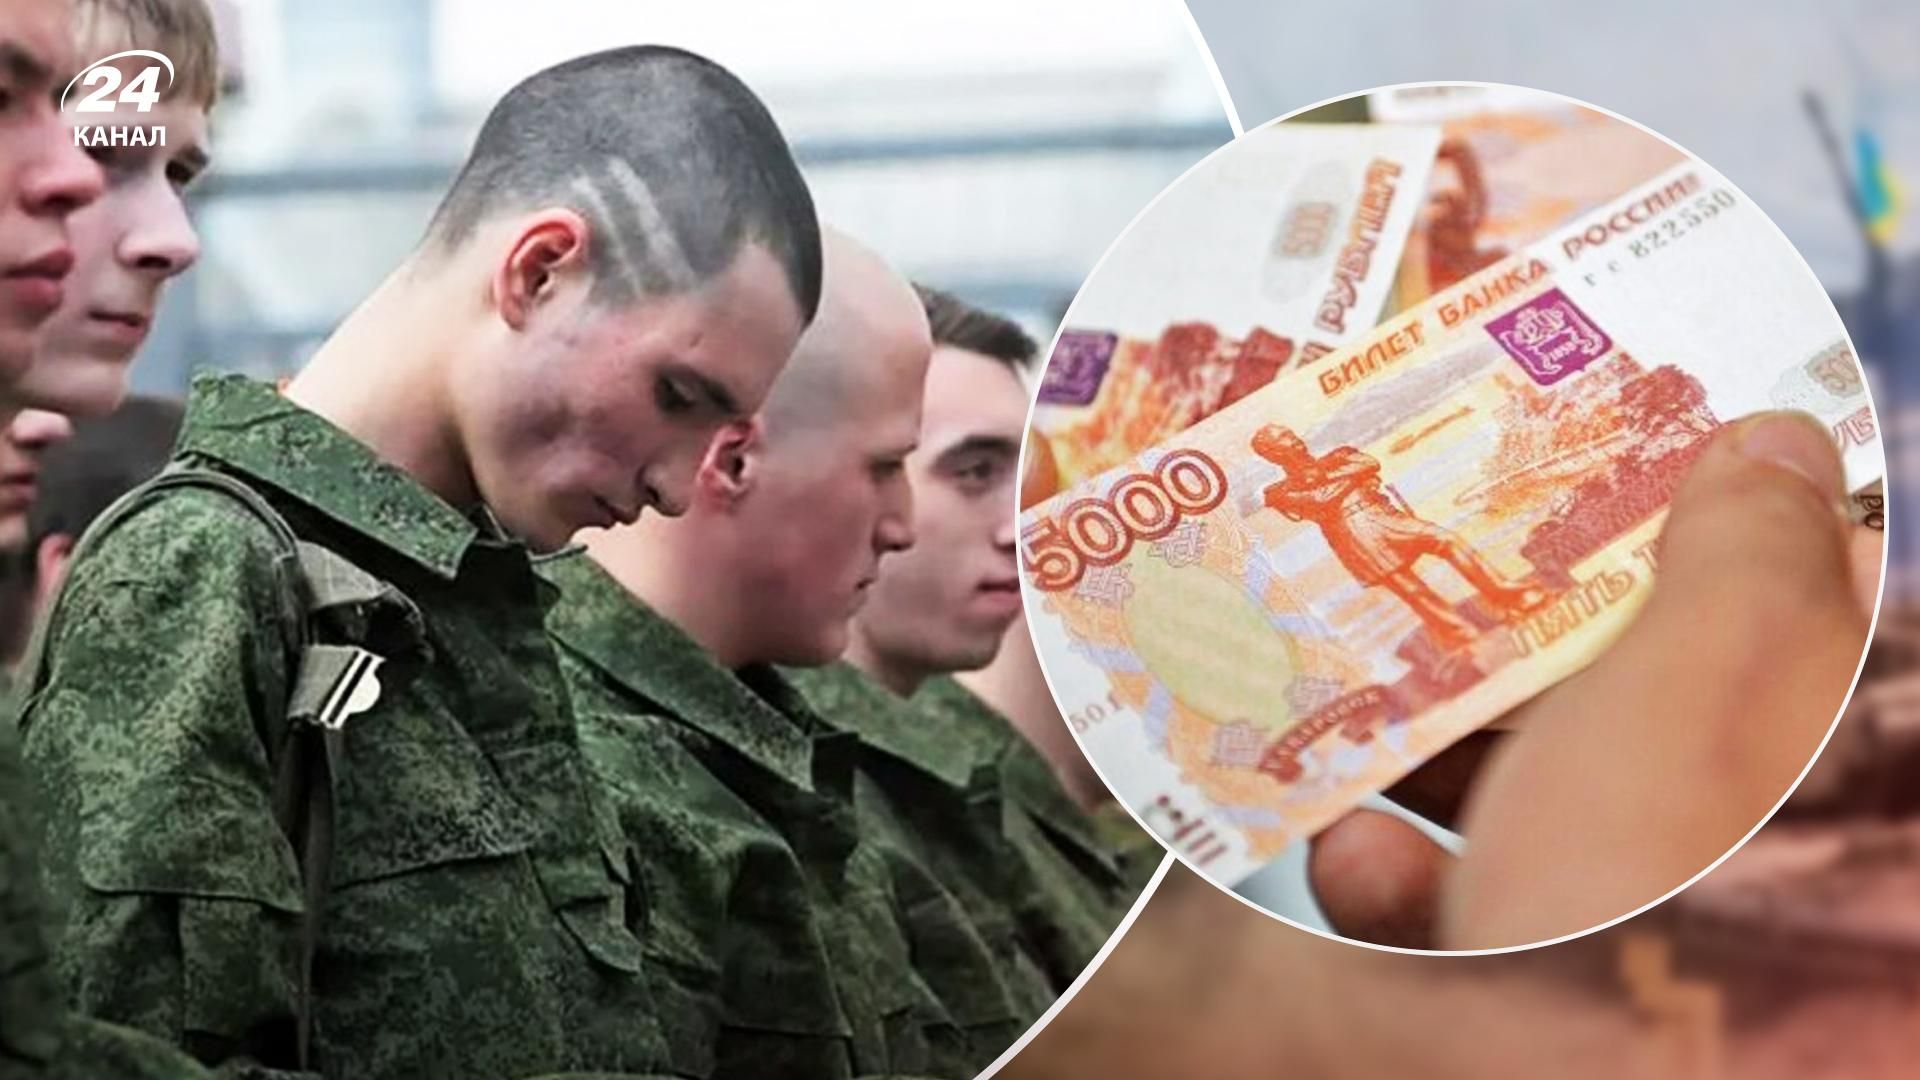 "В один конец": Россия, чтобы привлечь бойцов, обещает им деньги и краткосрочные контракты